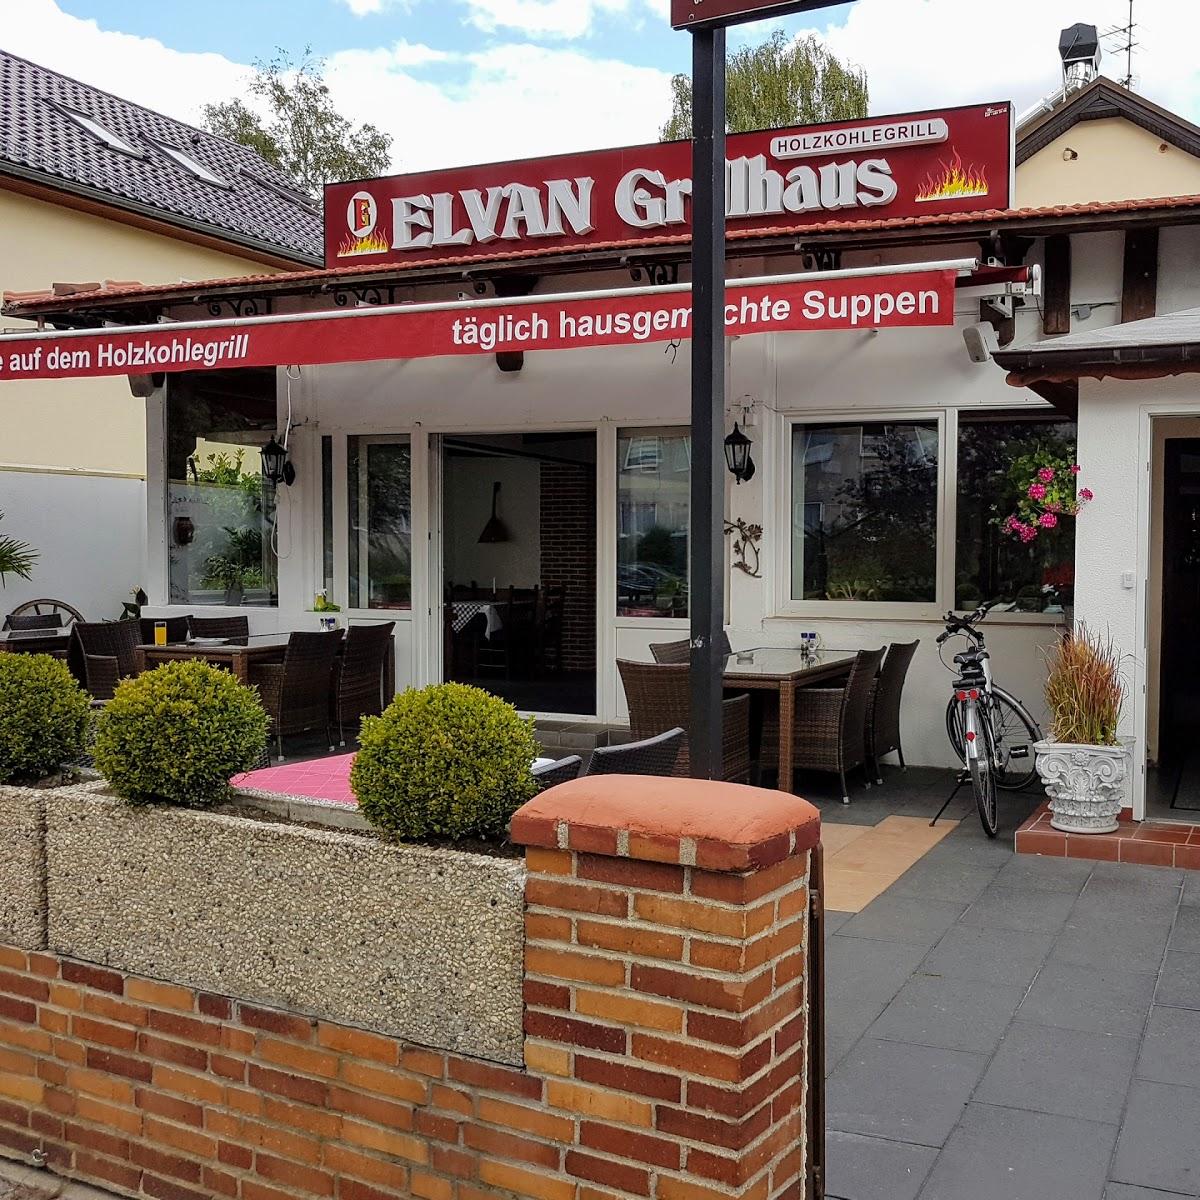 Restaurant "Elvan Grillhaus" in  Berlin